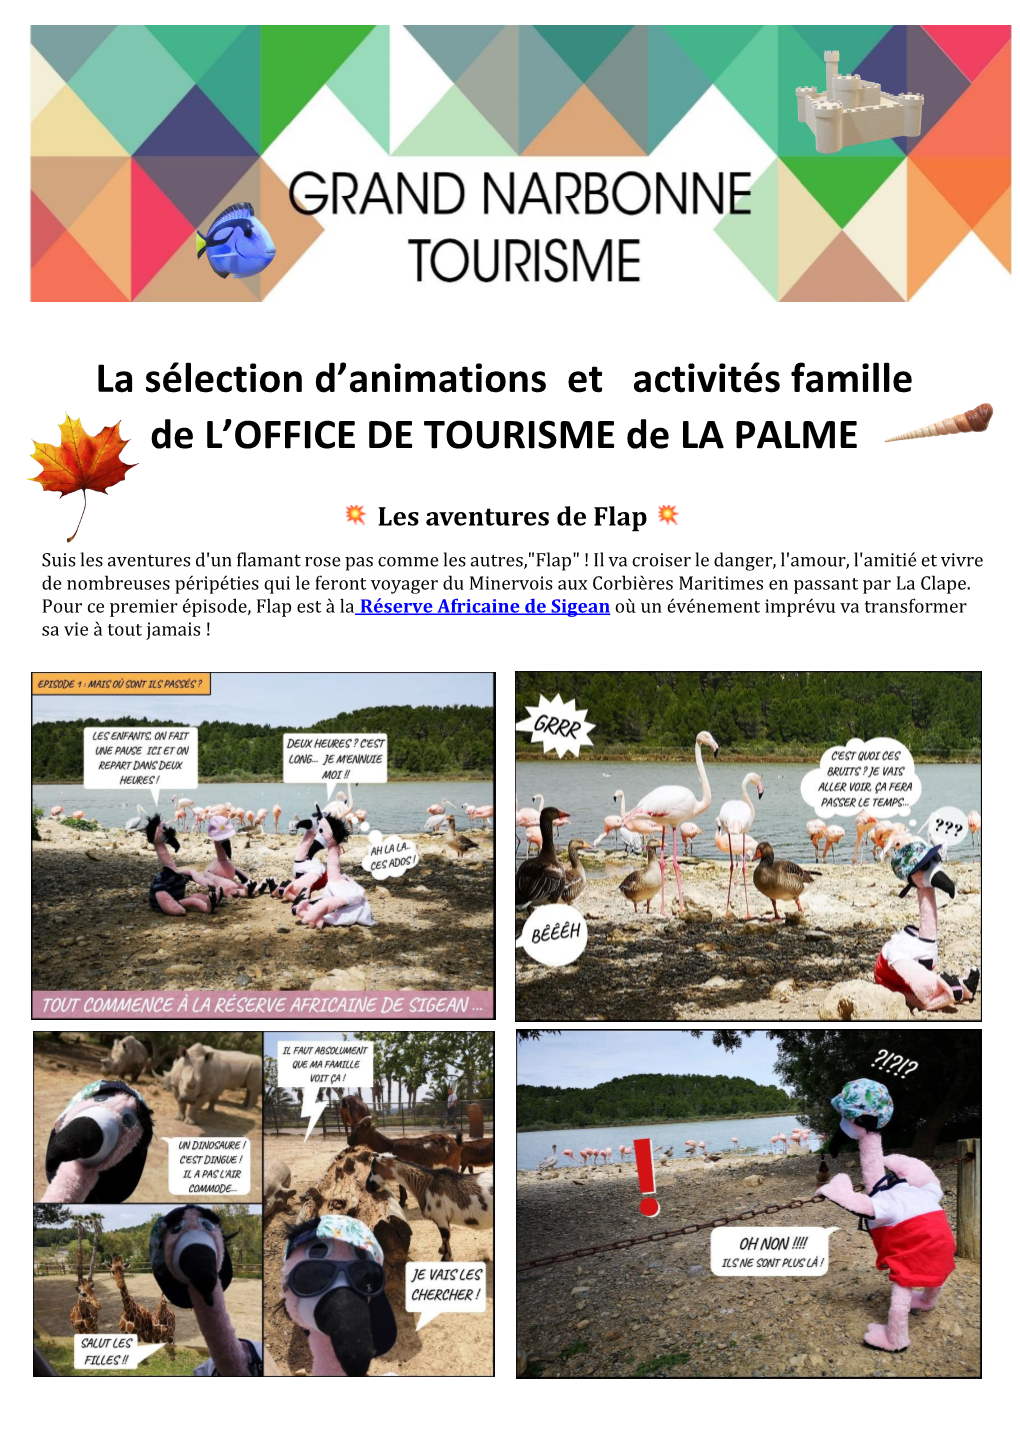 La Sélection D'animations Et Activités Famille De L'office DE TOURISME De LA PALME